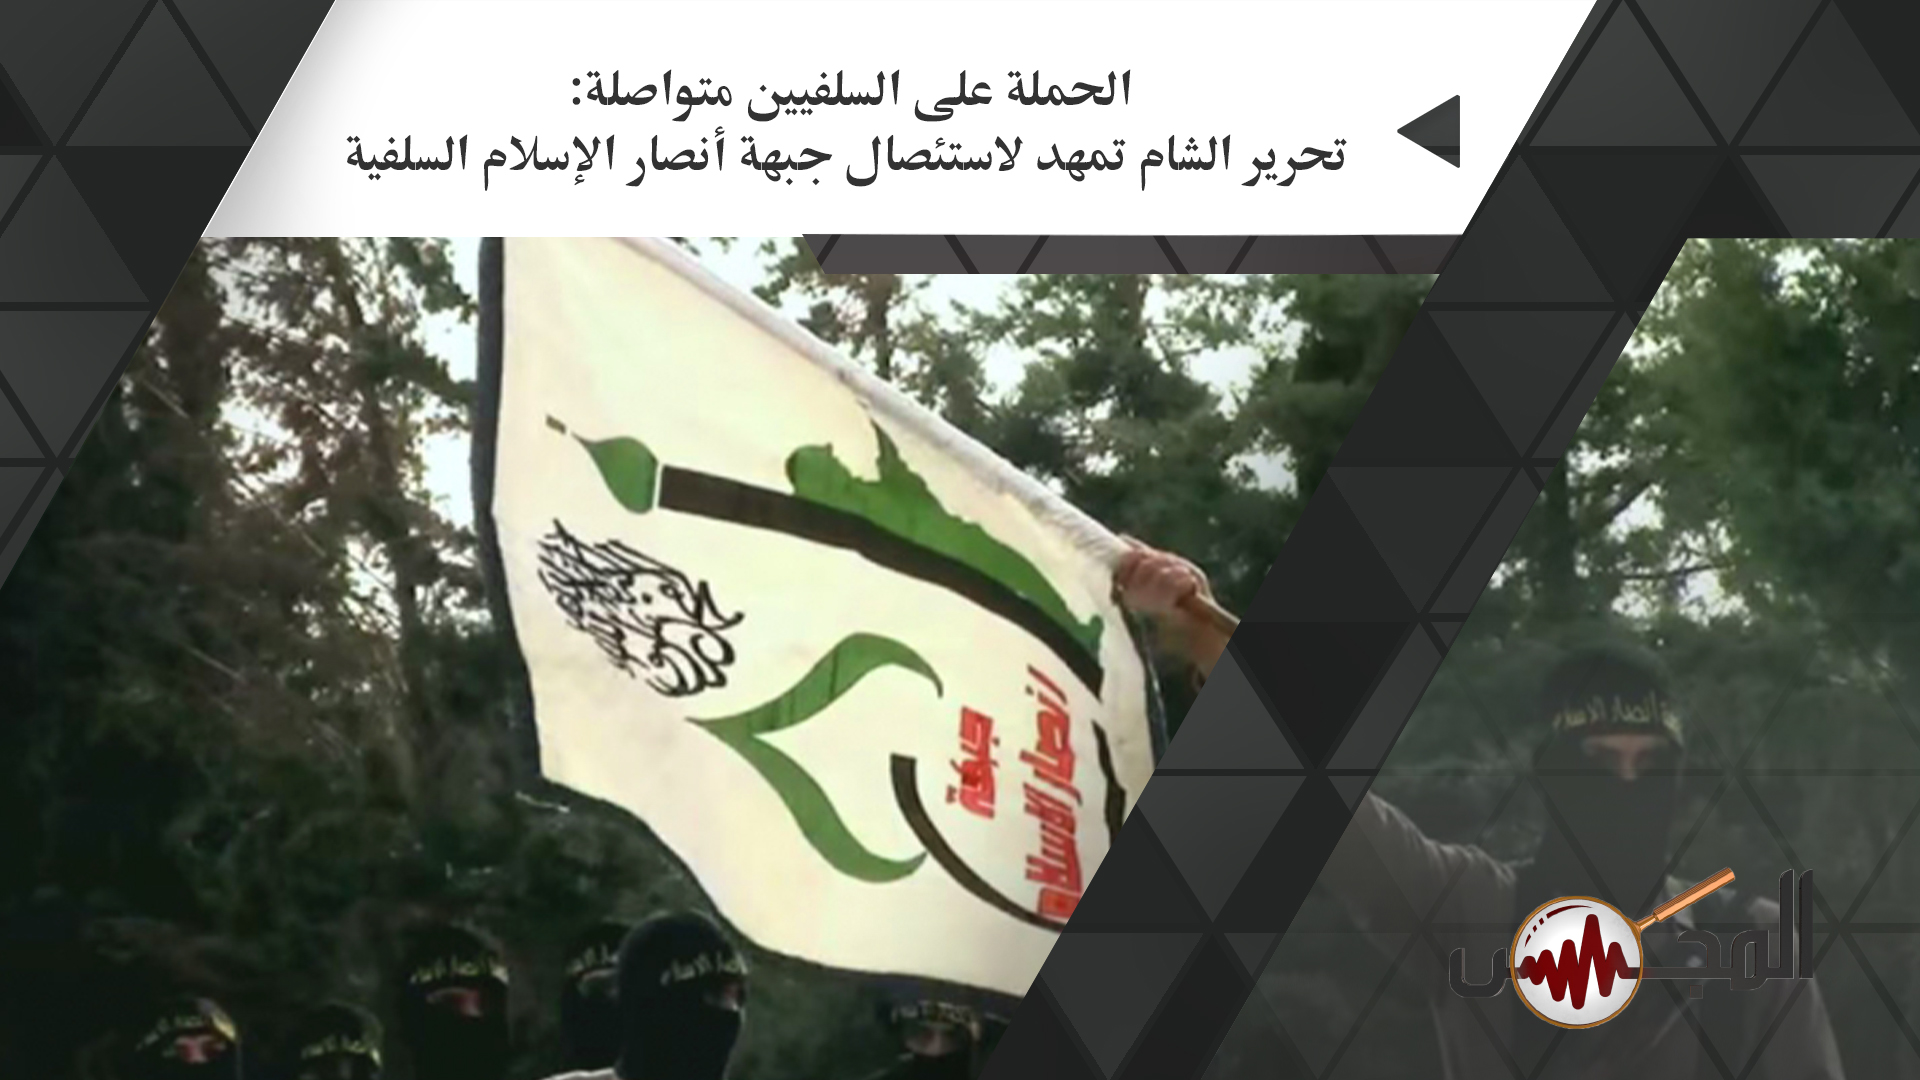 الحملة على السلفيين متواصلة: تحرير الشام تمهد لاستئصال جبهة أنصار الإسلام السلفية